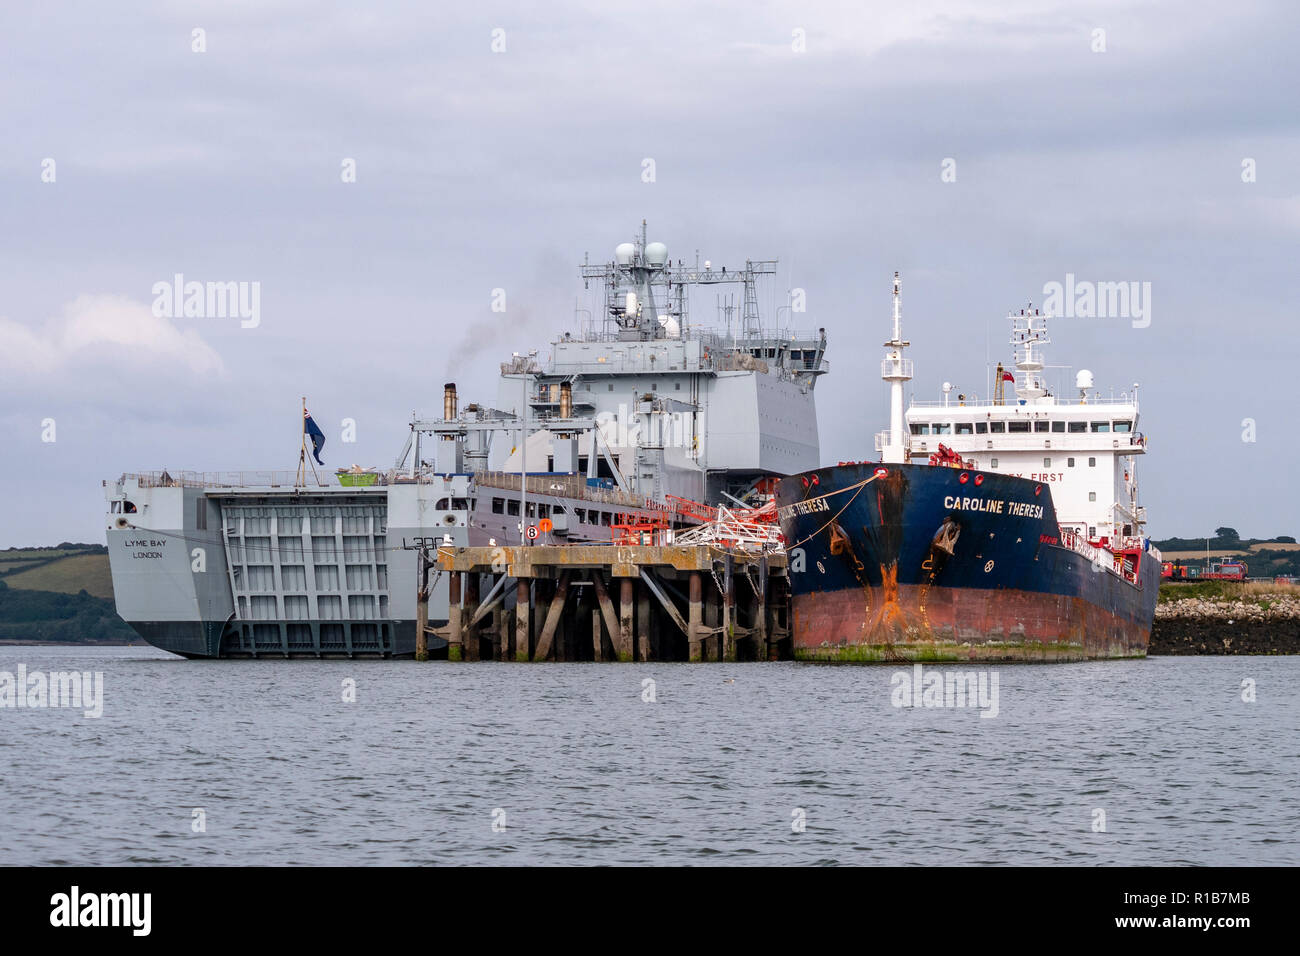 RFA 'Lyme Bay' (L3007) e olio / Chimichiera Caroline Teresa - ancorata a Falmouth, Cornwall, Regno Unito. Foto Stock